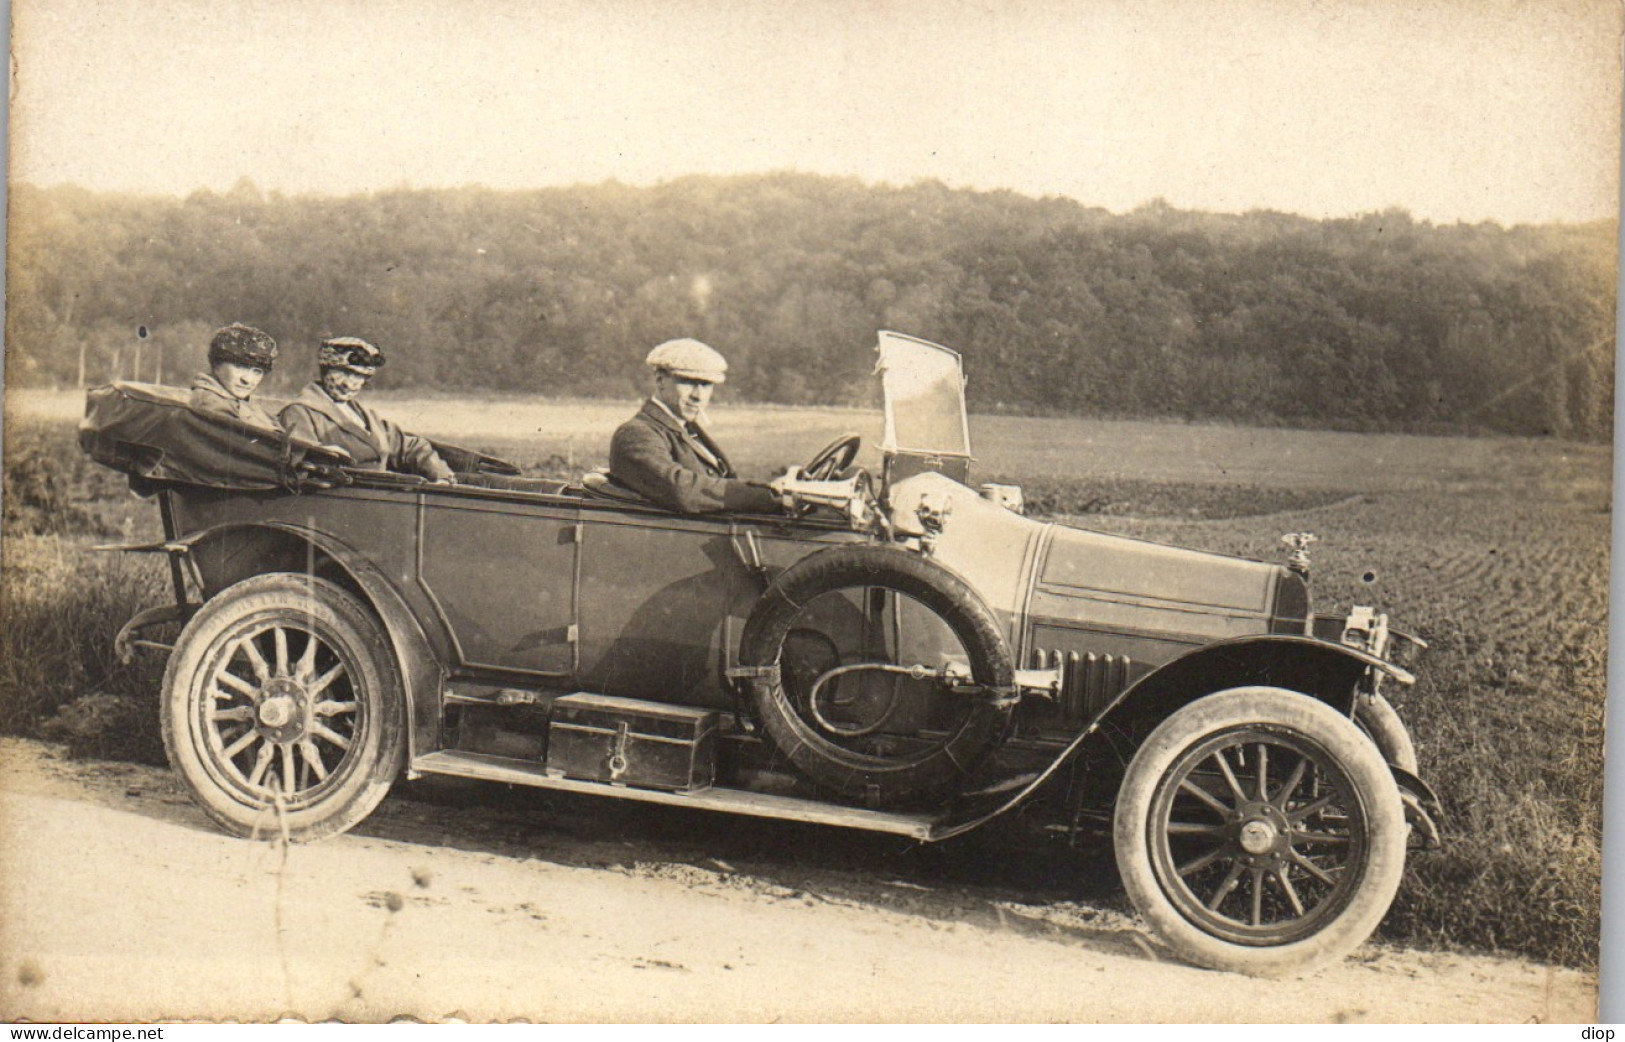 Photographie Photo Vintage Snapshot Amateur Automobile Voiture Cabriolet  Auto - Automobili